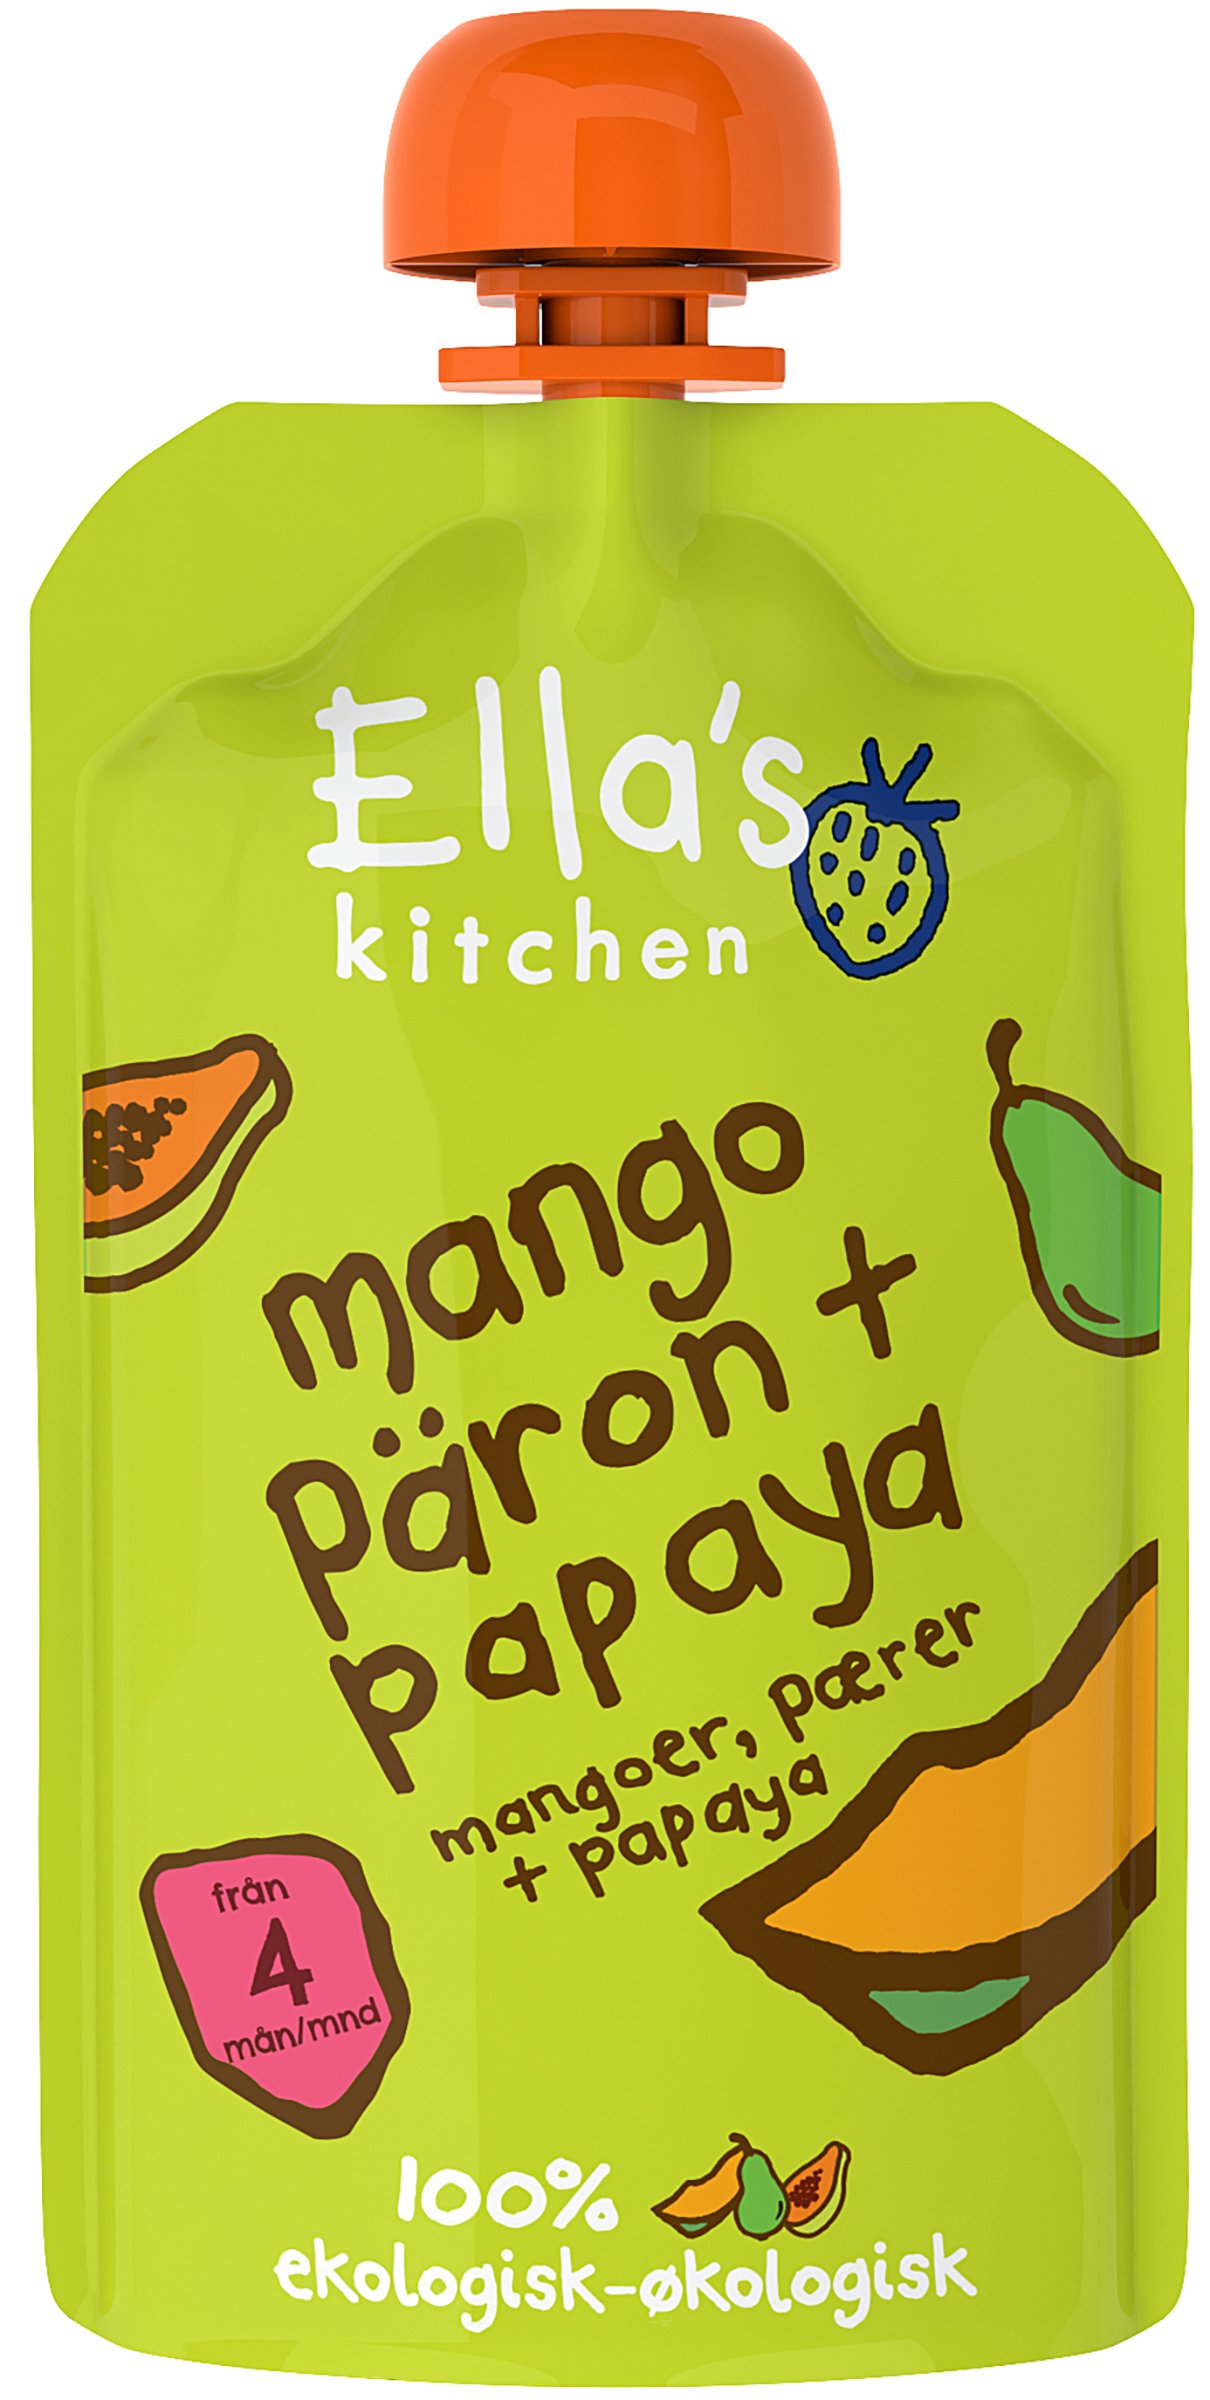 Ella's Kitchen Mango, päron & papaya puré 120 g